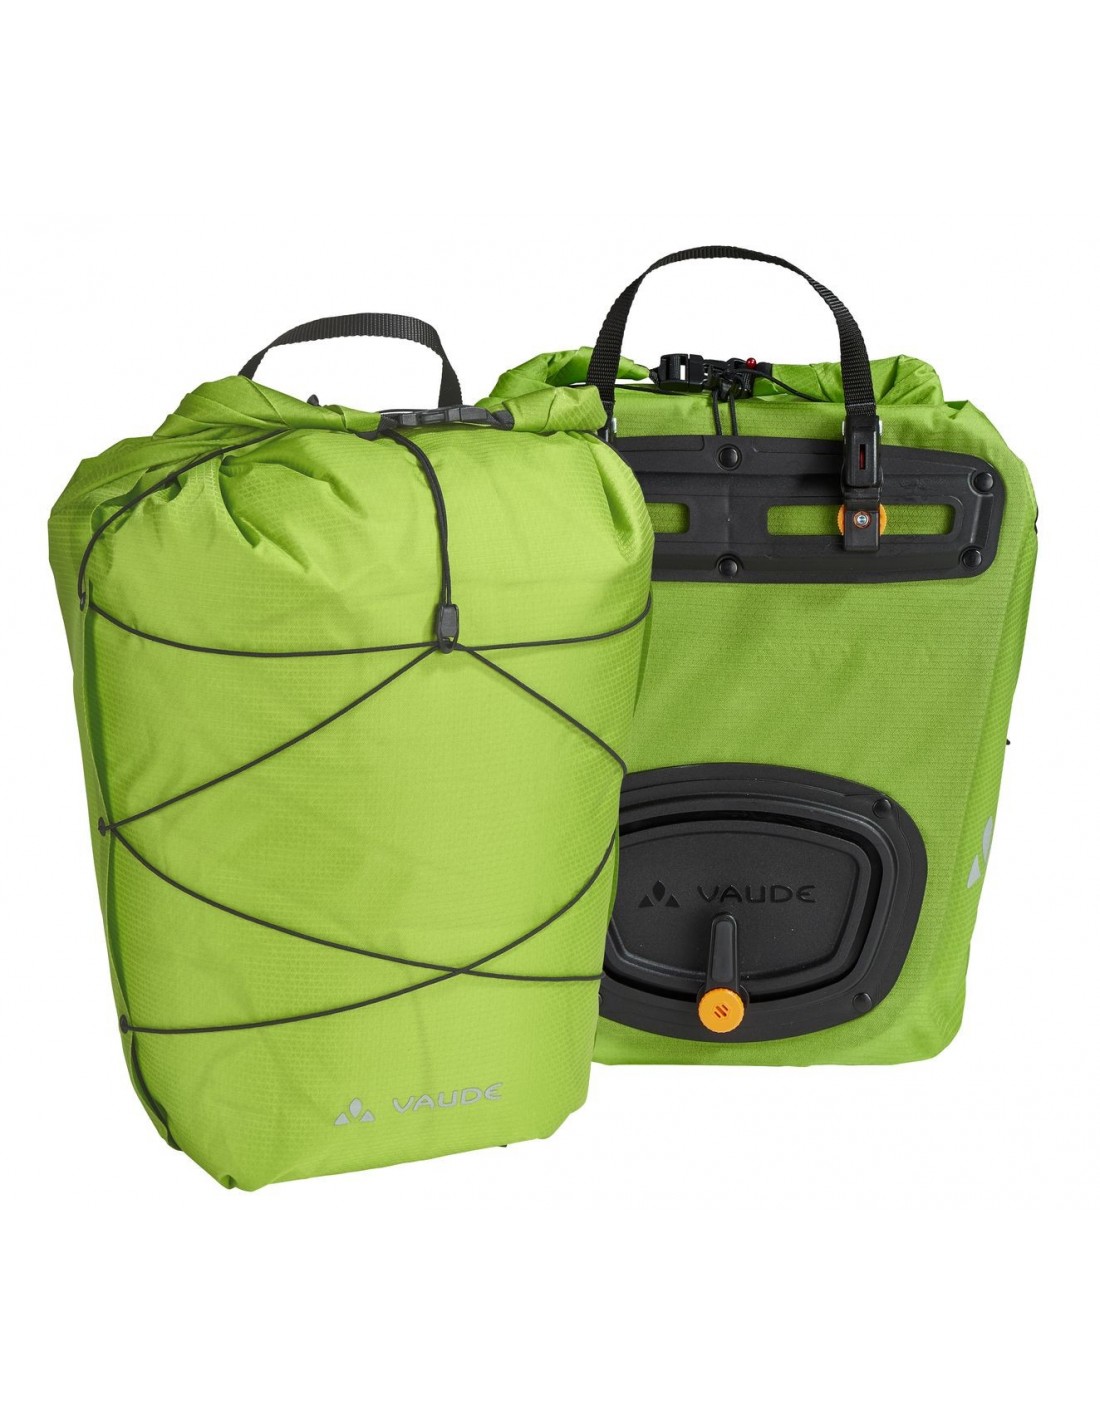 Vaude Fahrradtasche Aqua Back Light, green Taschenvariante - Gepäckträgertaschen, von Vaude